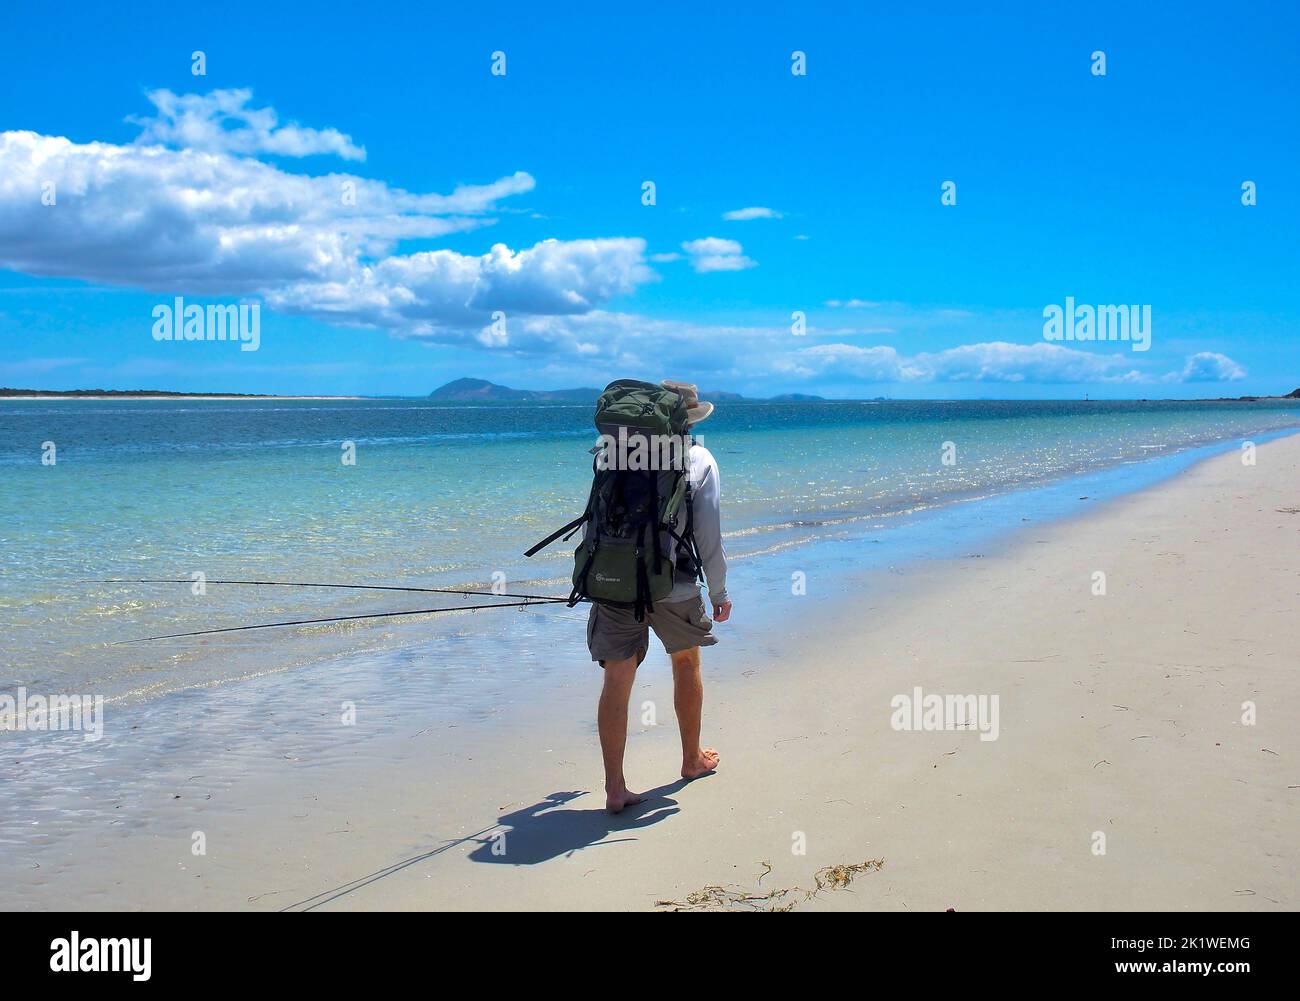 Pescatore solo maschio, vista sul retro, passeggiate lungo la spiaggia di sabbia bianca al bordo dell'acqua. Cielo azzurro estivo e nuvole bianche con colline lontane all'orizzonte. Foto Stock